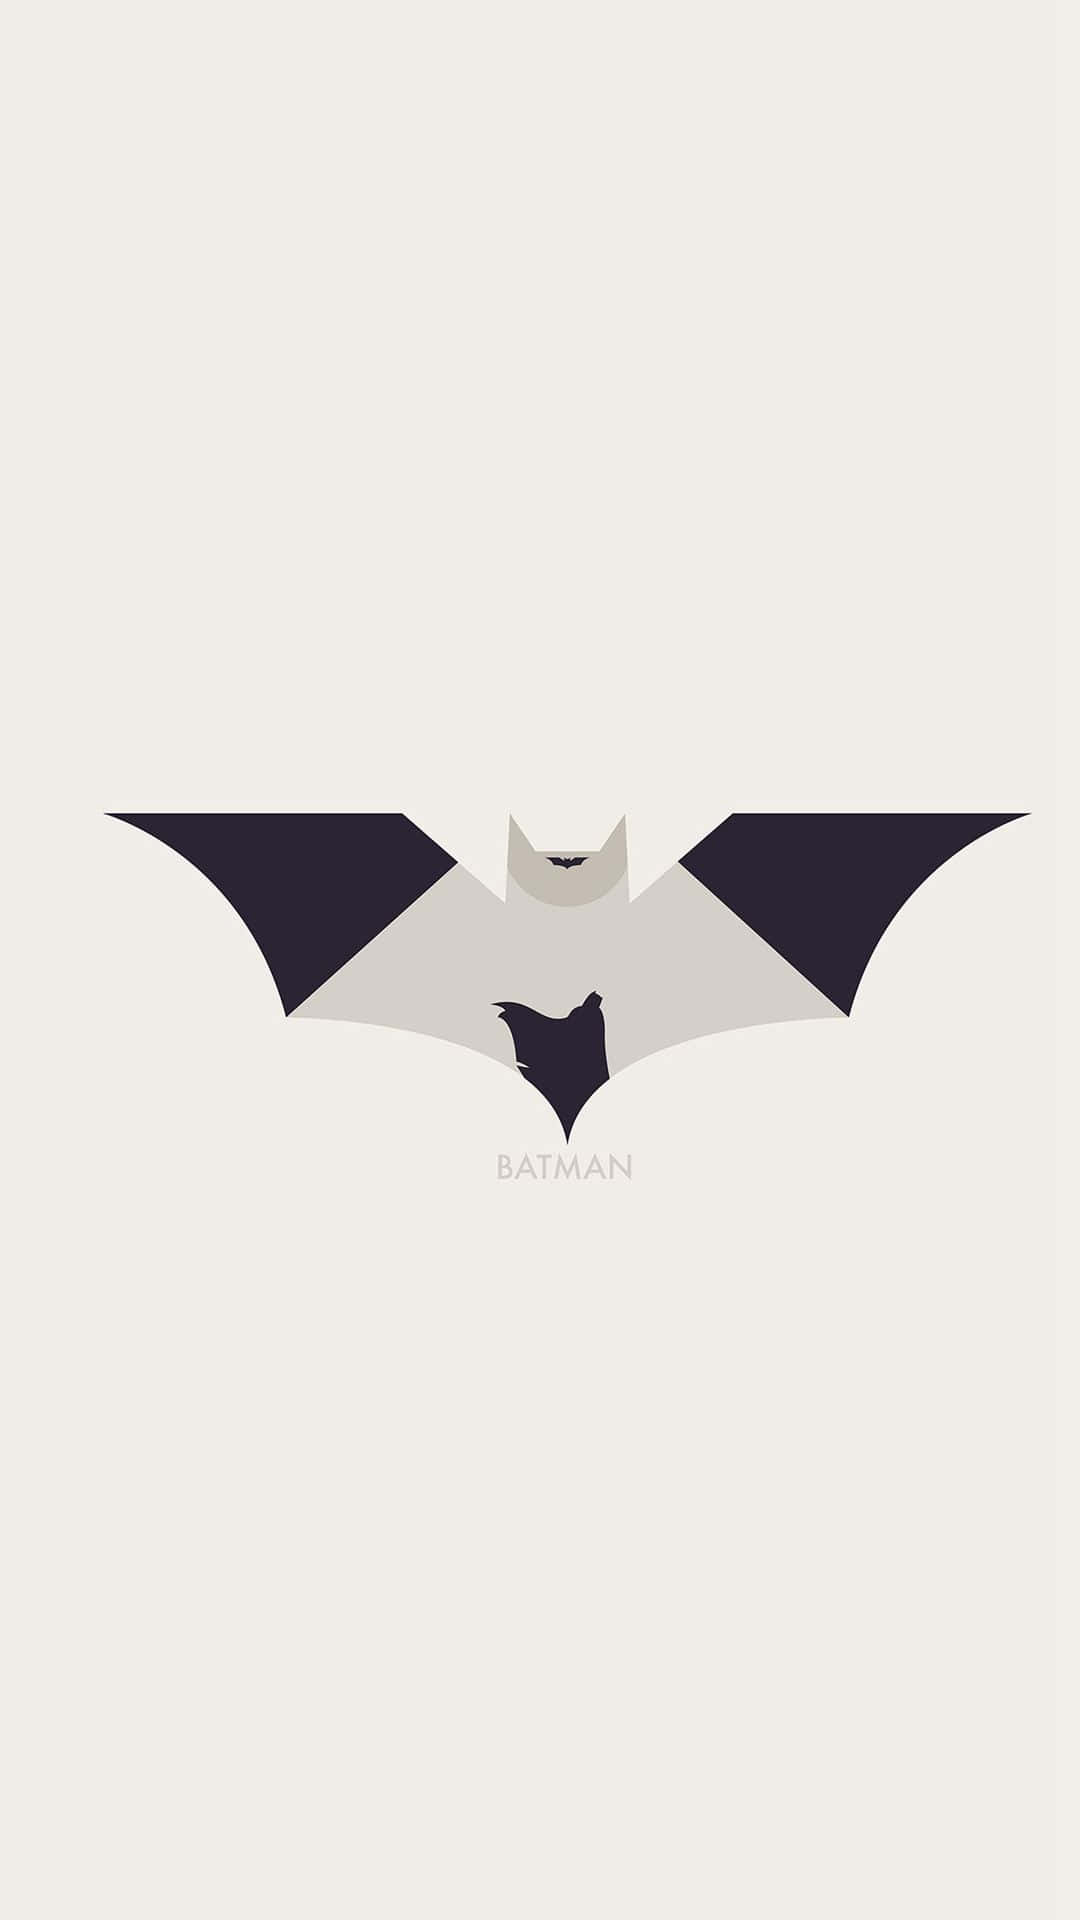 Logotipoestético De Batman En Blanco Y Negro. Fondo de pantalla